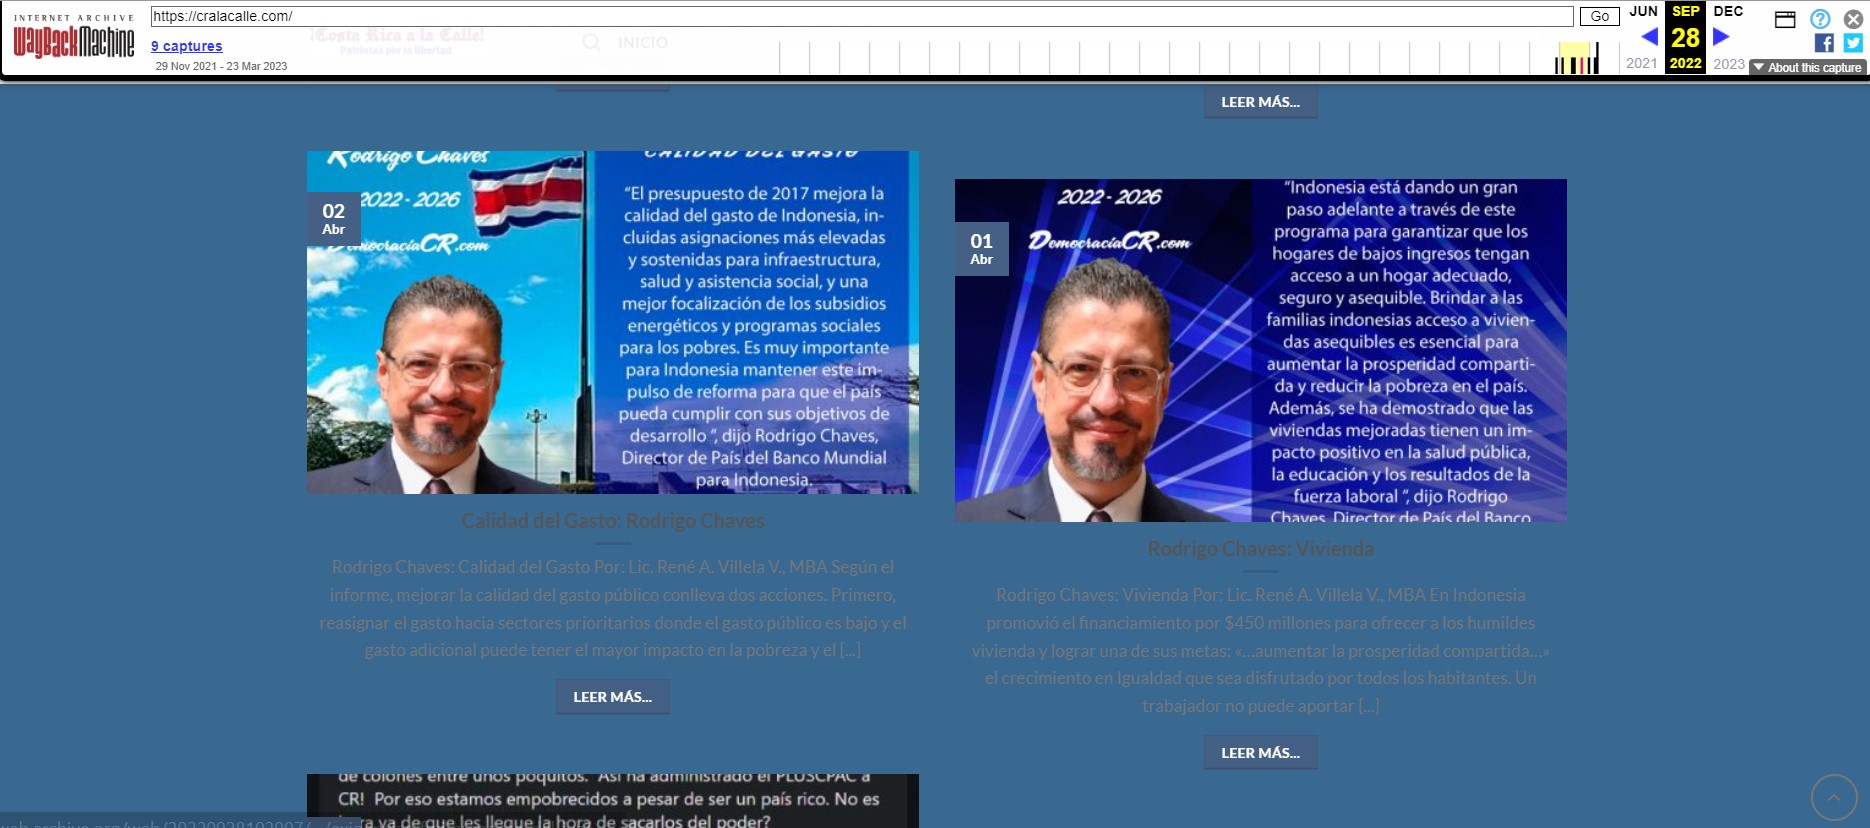 Captura de pantalla del sitio cralacalle.com disponible en Wayback Machine